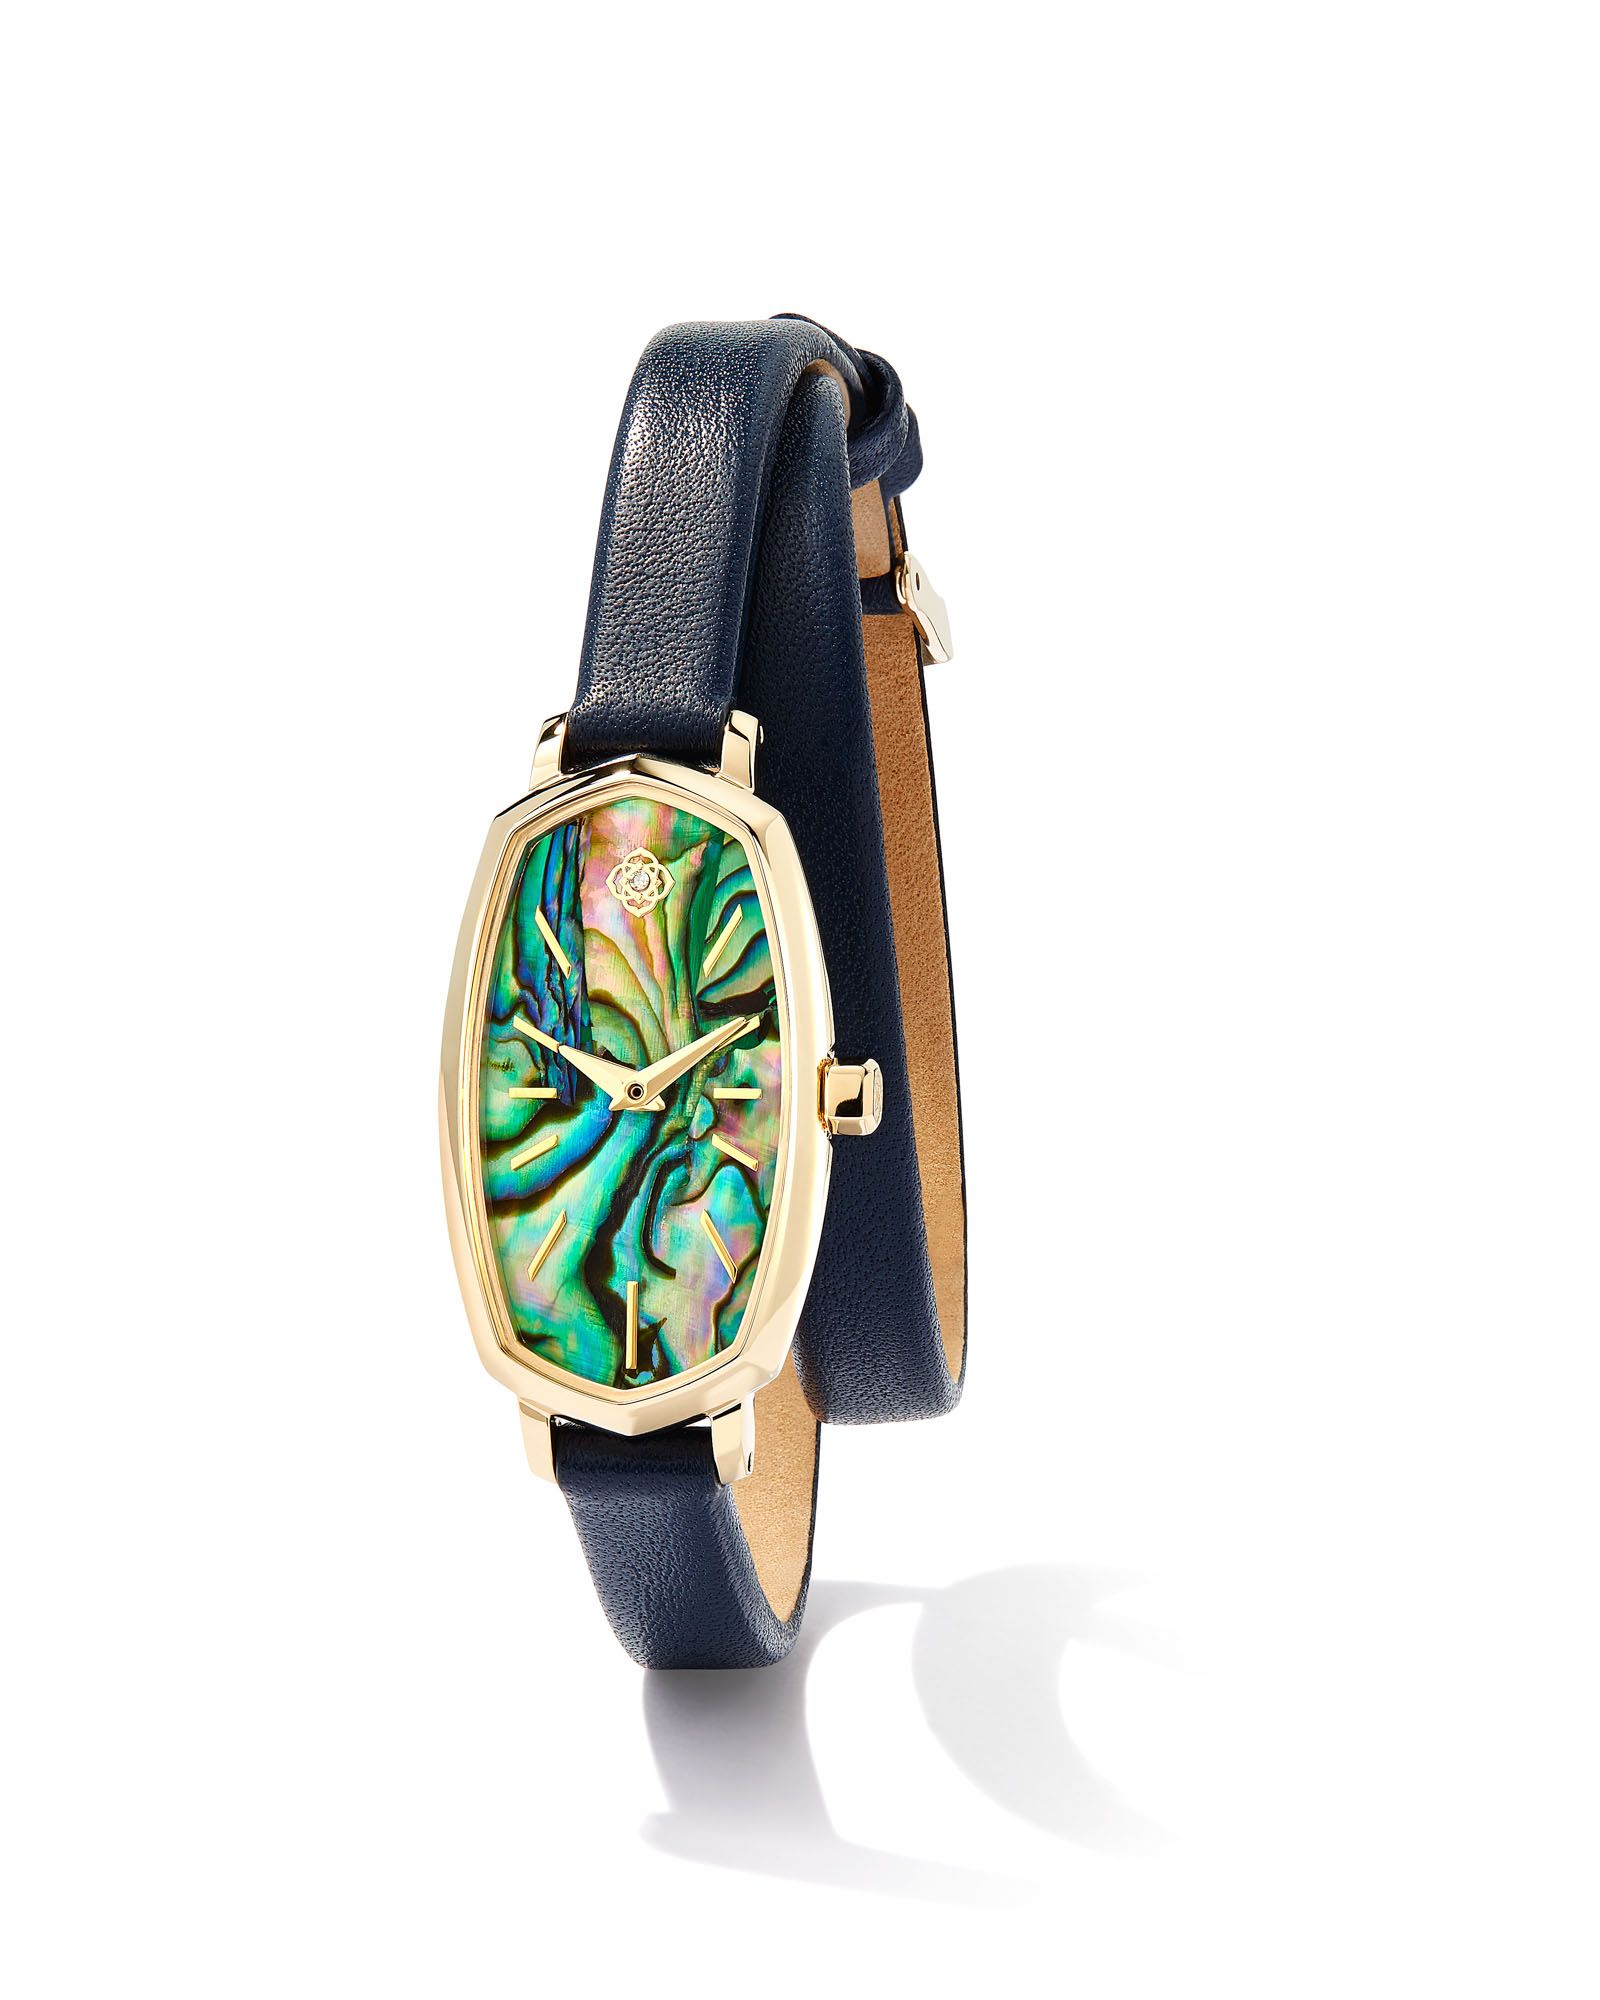 Elle Gold Tone Stainless Steel Leather Wrap Watch in Abalone | Kendra Scott | Kendra Scott